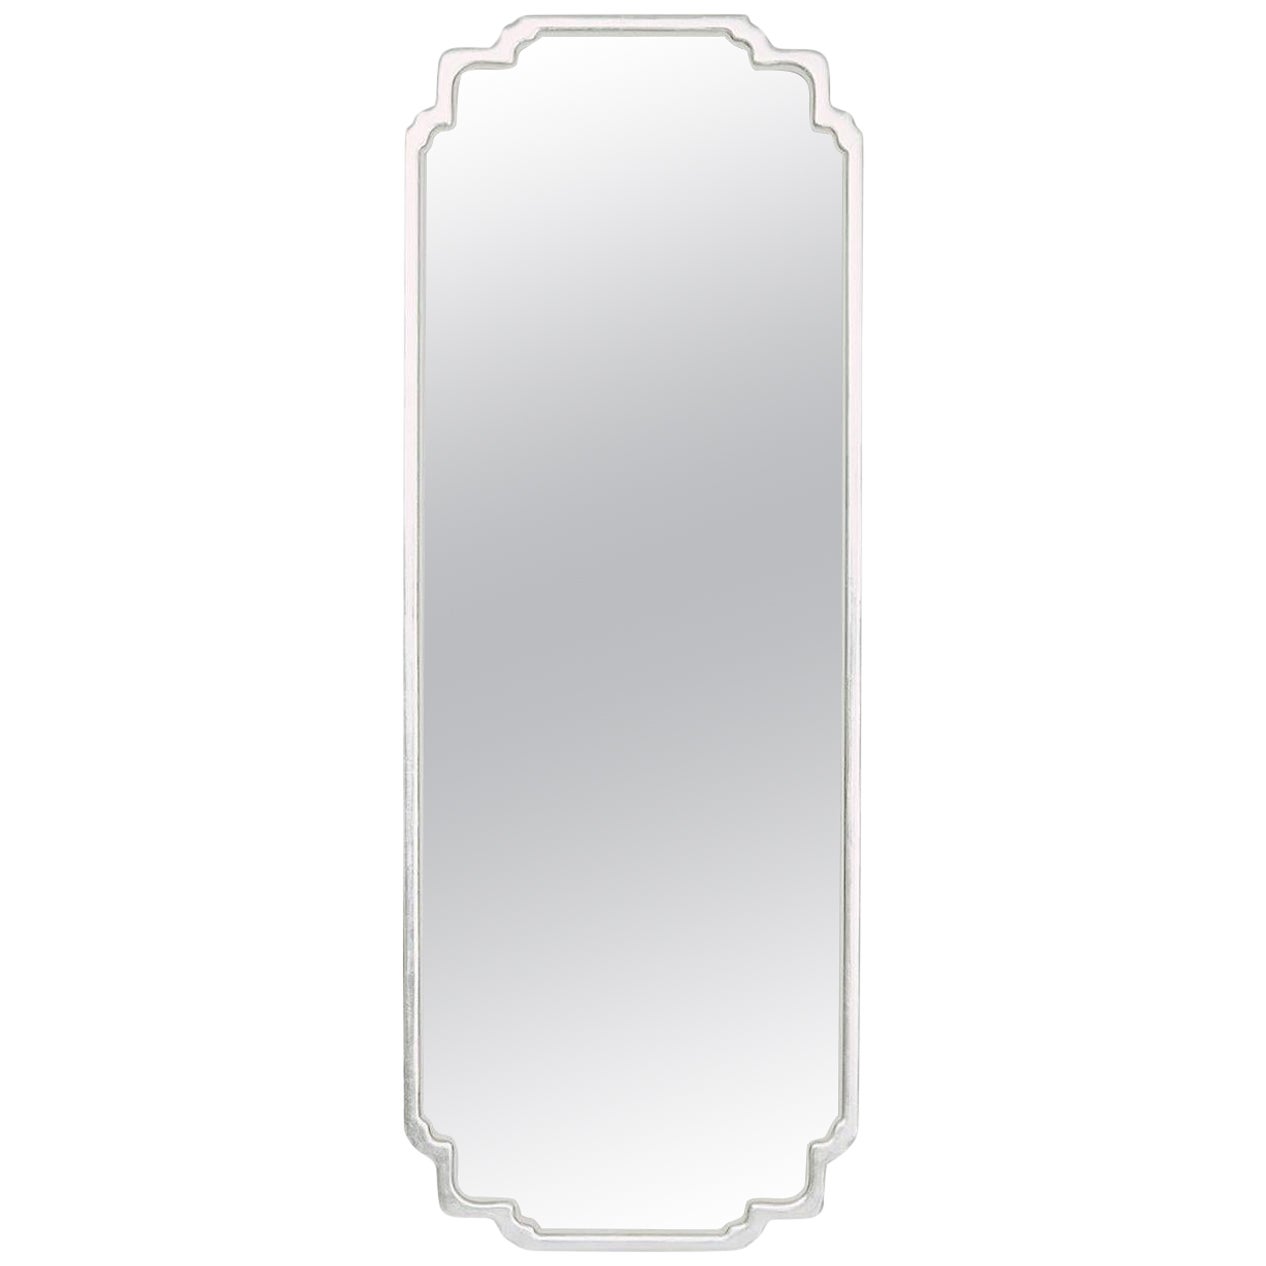 Elan Silver Mirror 